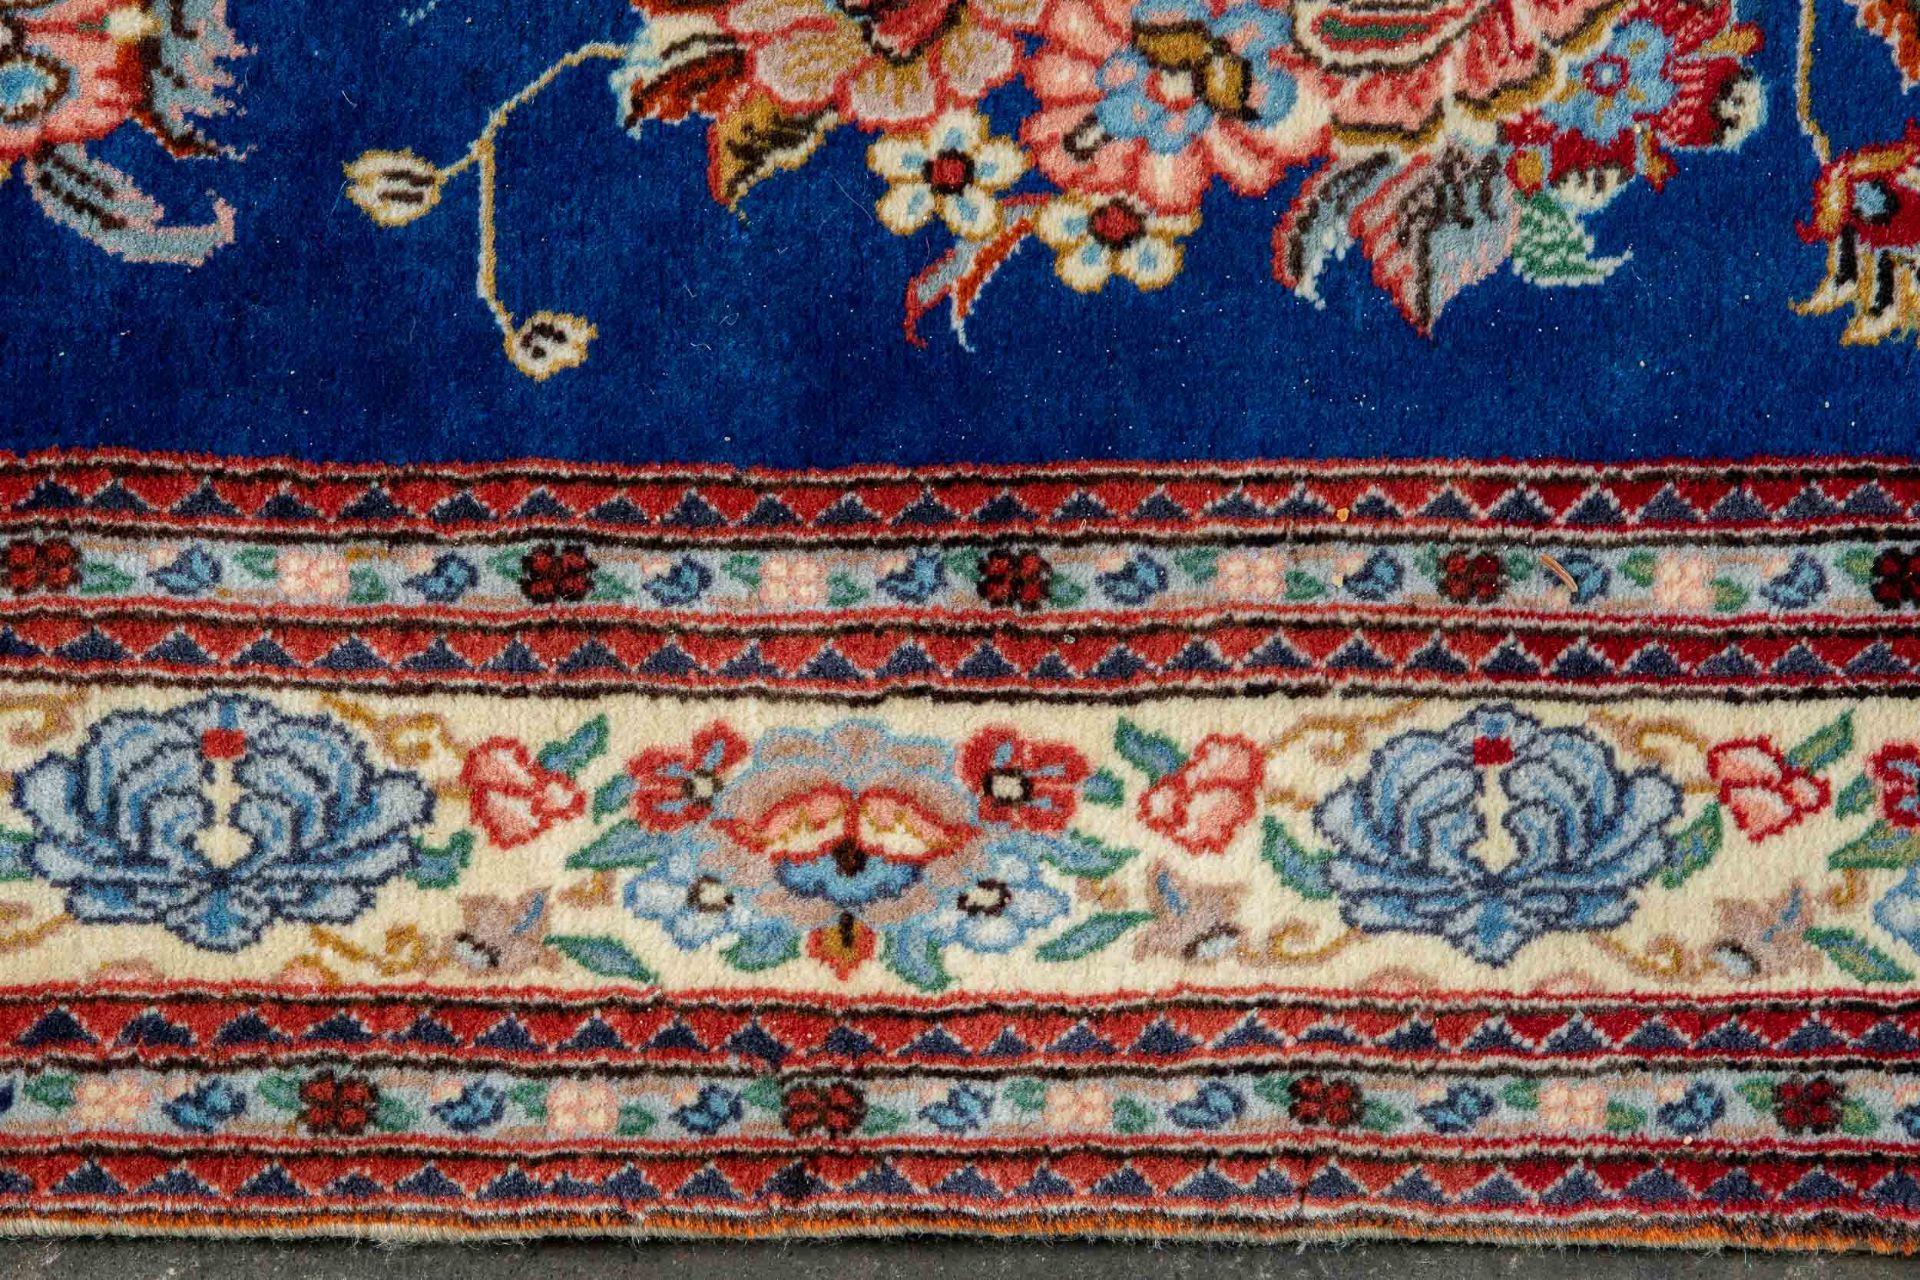 Blaugrundige Teppichgalerie, ca. 66 x 388 cm, schöne Farbigkeit, guter gebrauchter Erhalt. 20./21. - Image 3 of 7